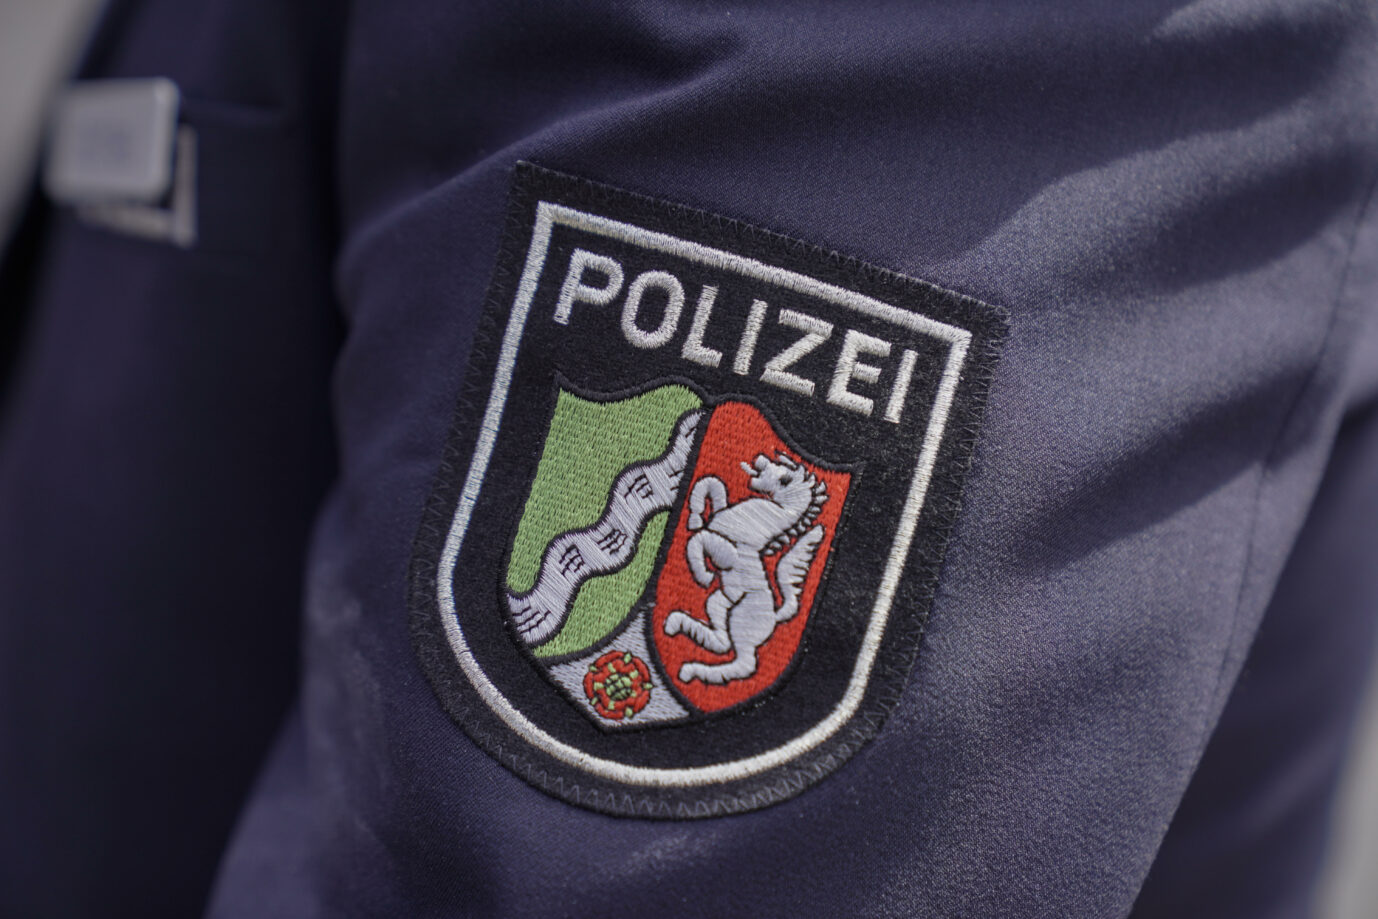 Wappen des Bundeslandes Nordrhein-Westfalen auf der Polizeiuniform Foto: picture alliance / Flashpic | Jens Krick